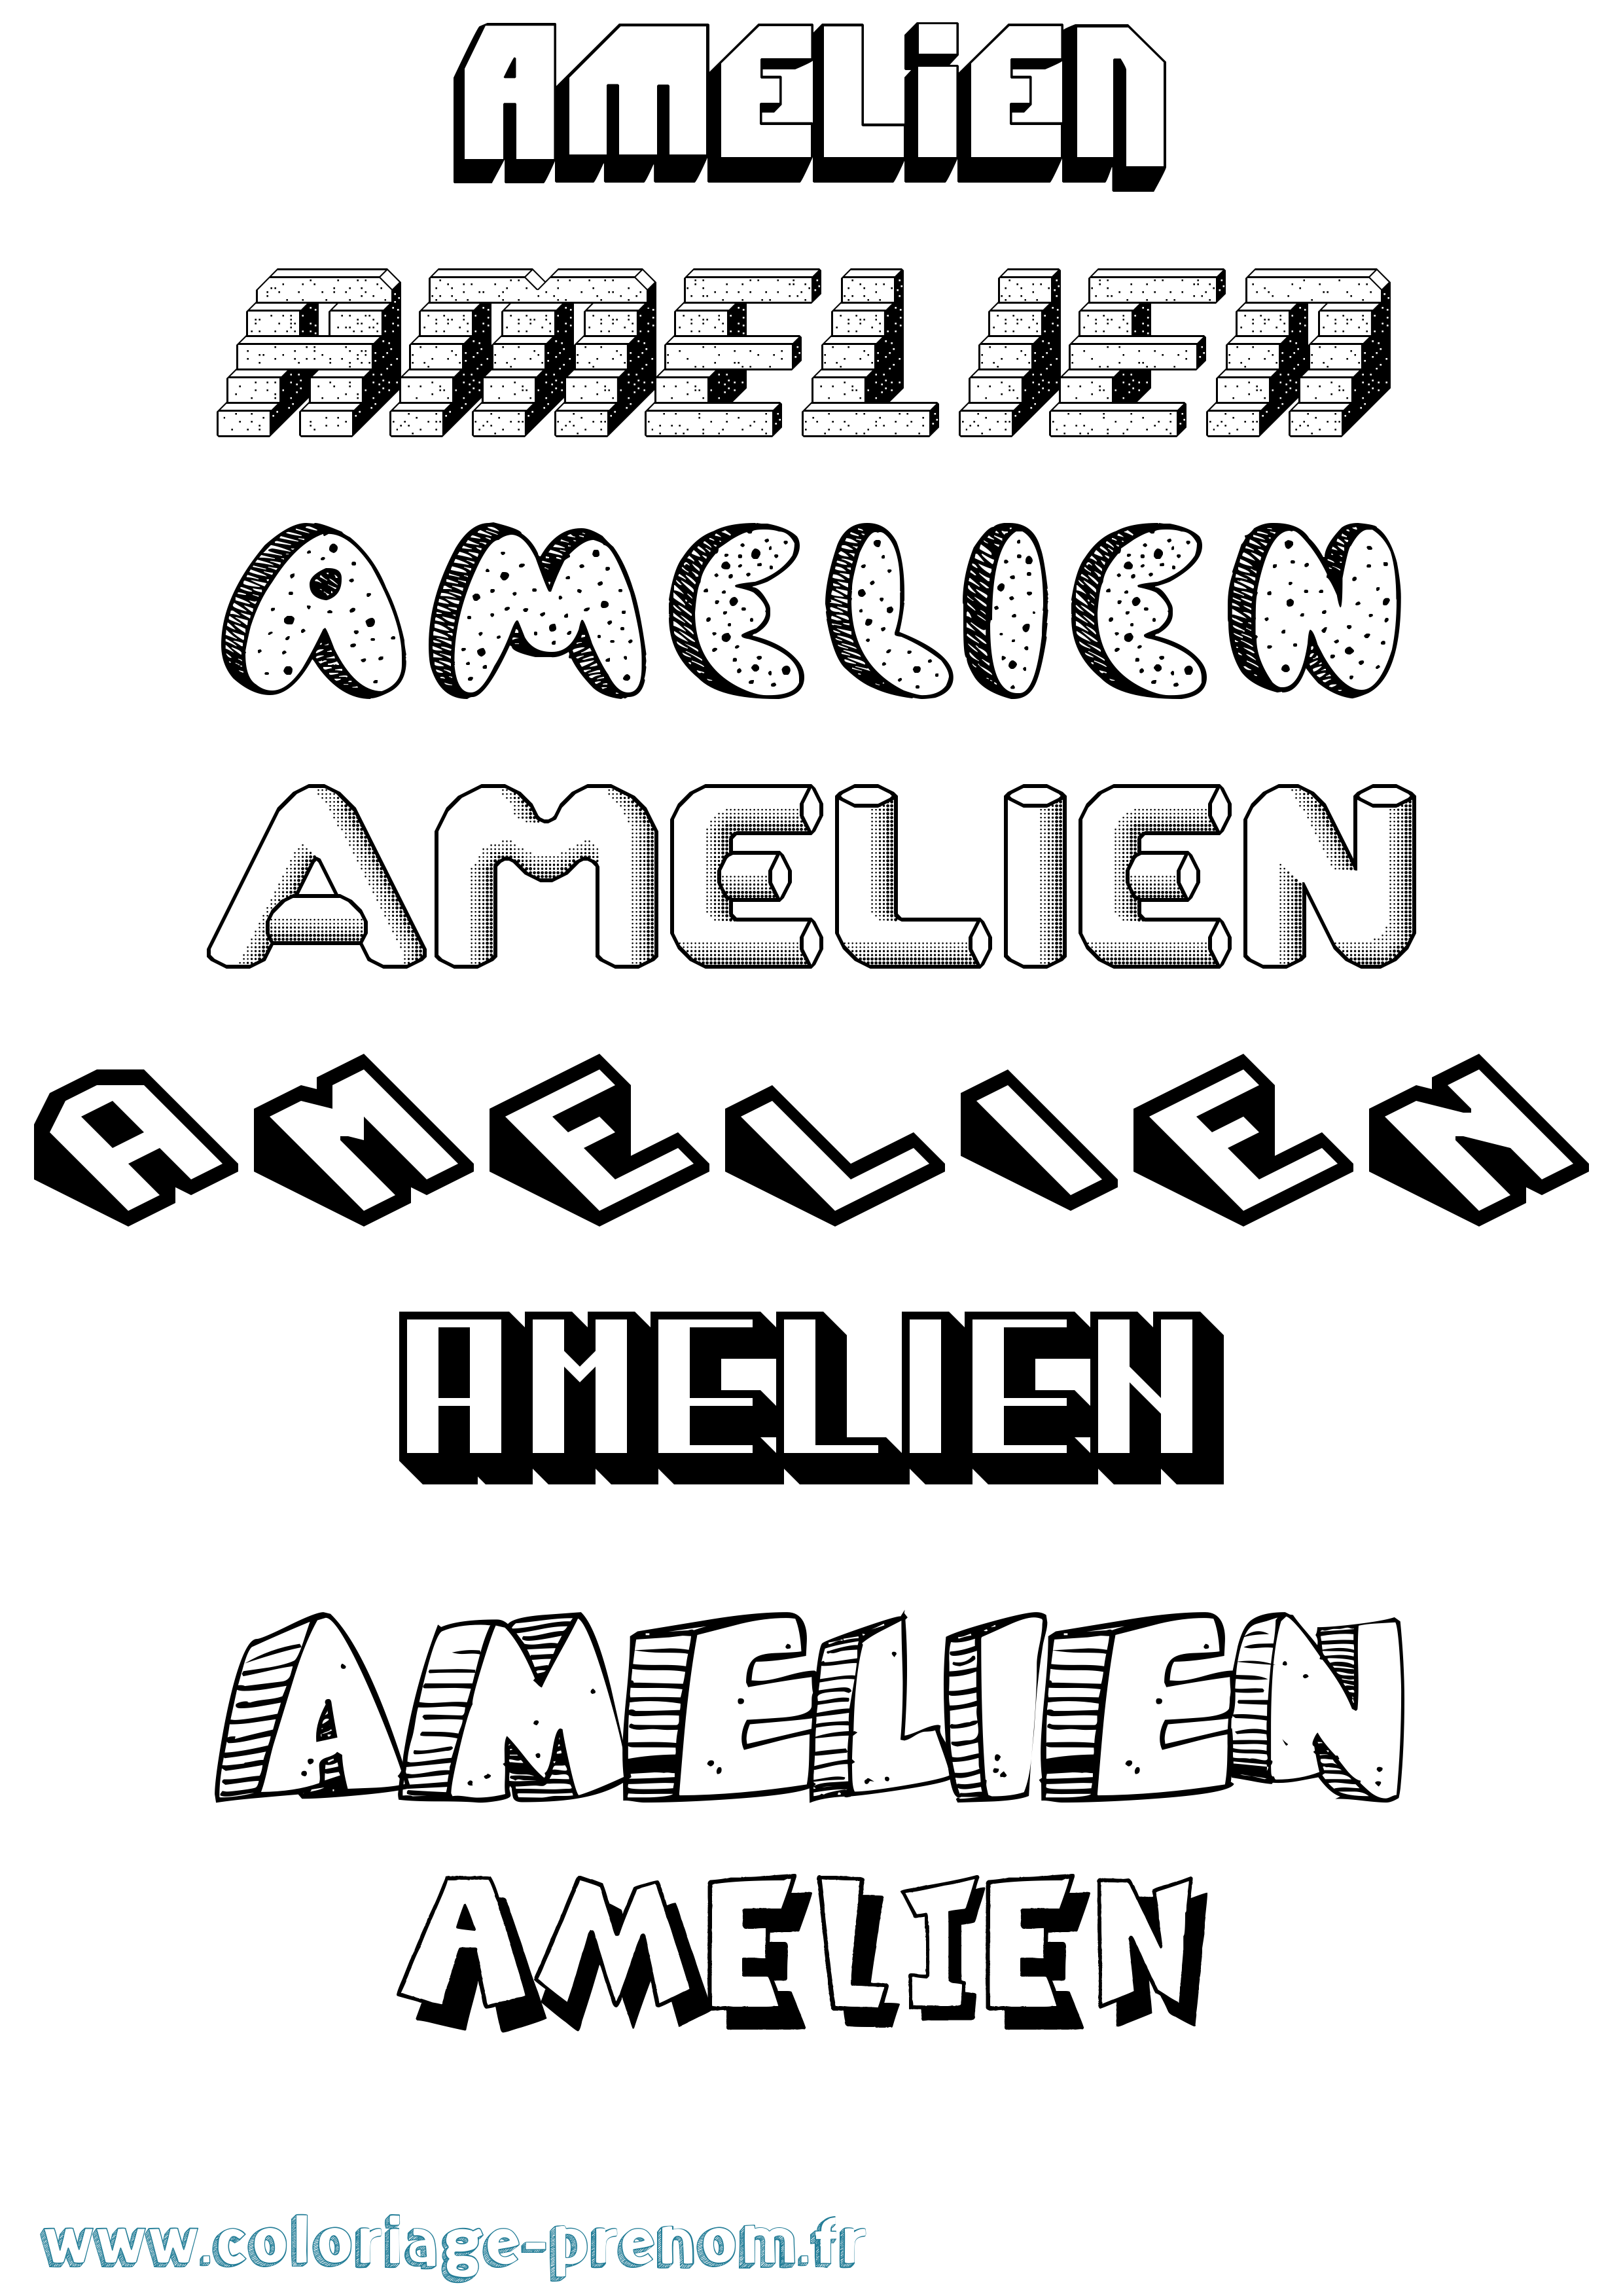 Coloriage prénom Amelien Effet 3D